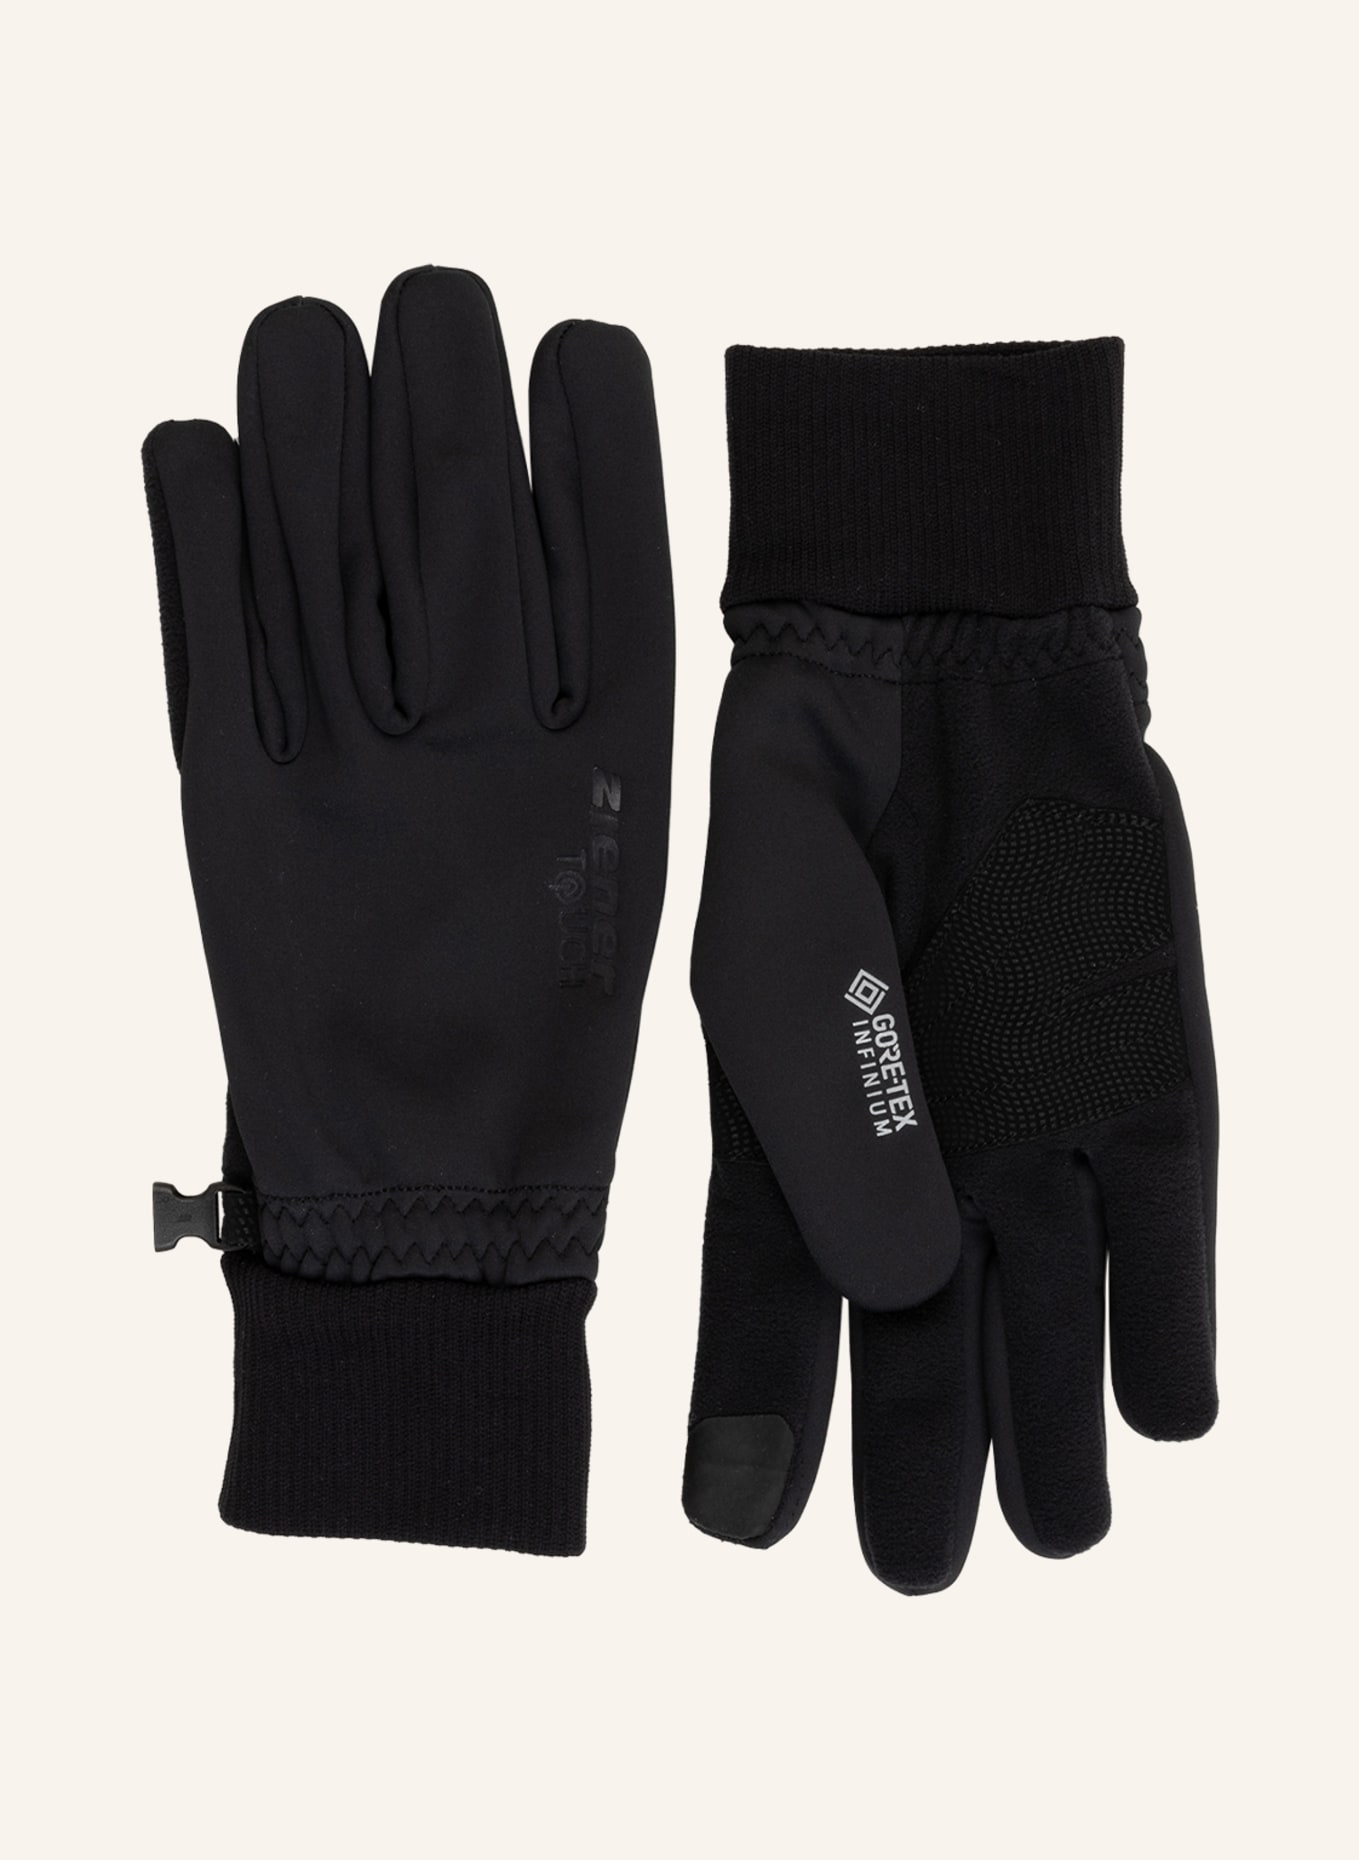 En kalkoen Beenmerg ziener Ski gloves IDAHO GTX INFINIUM TOUCH with touchscreen function in  black